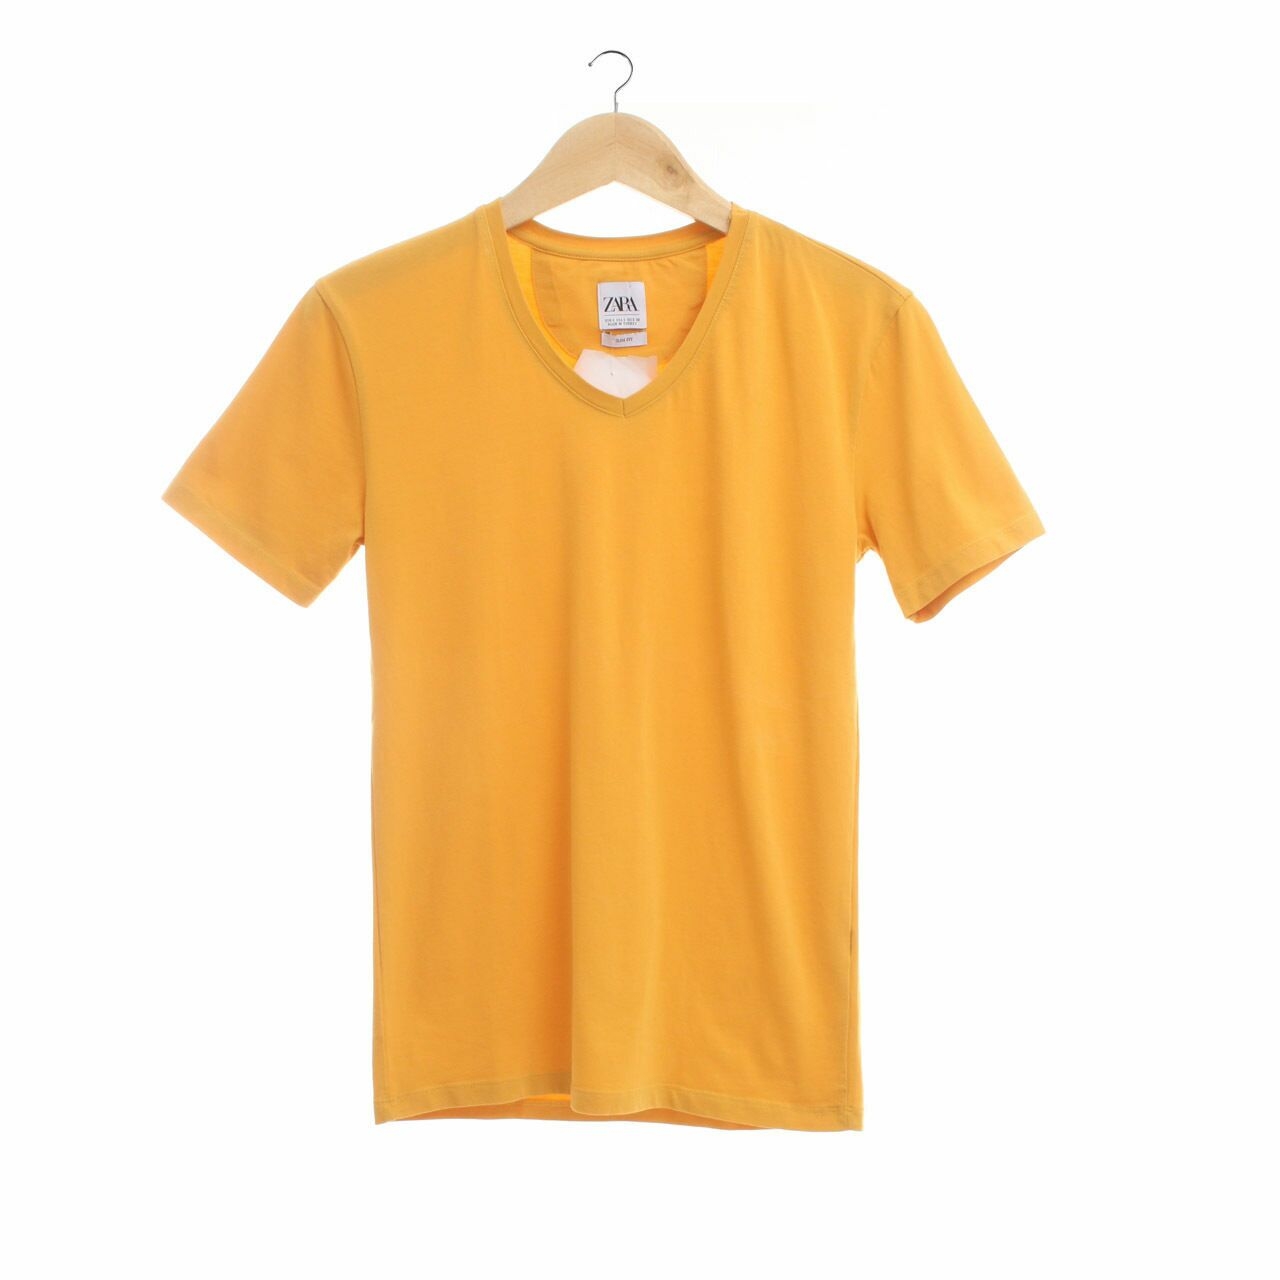 Zara Yellow Tshirt